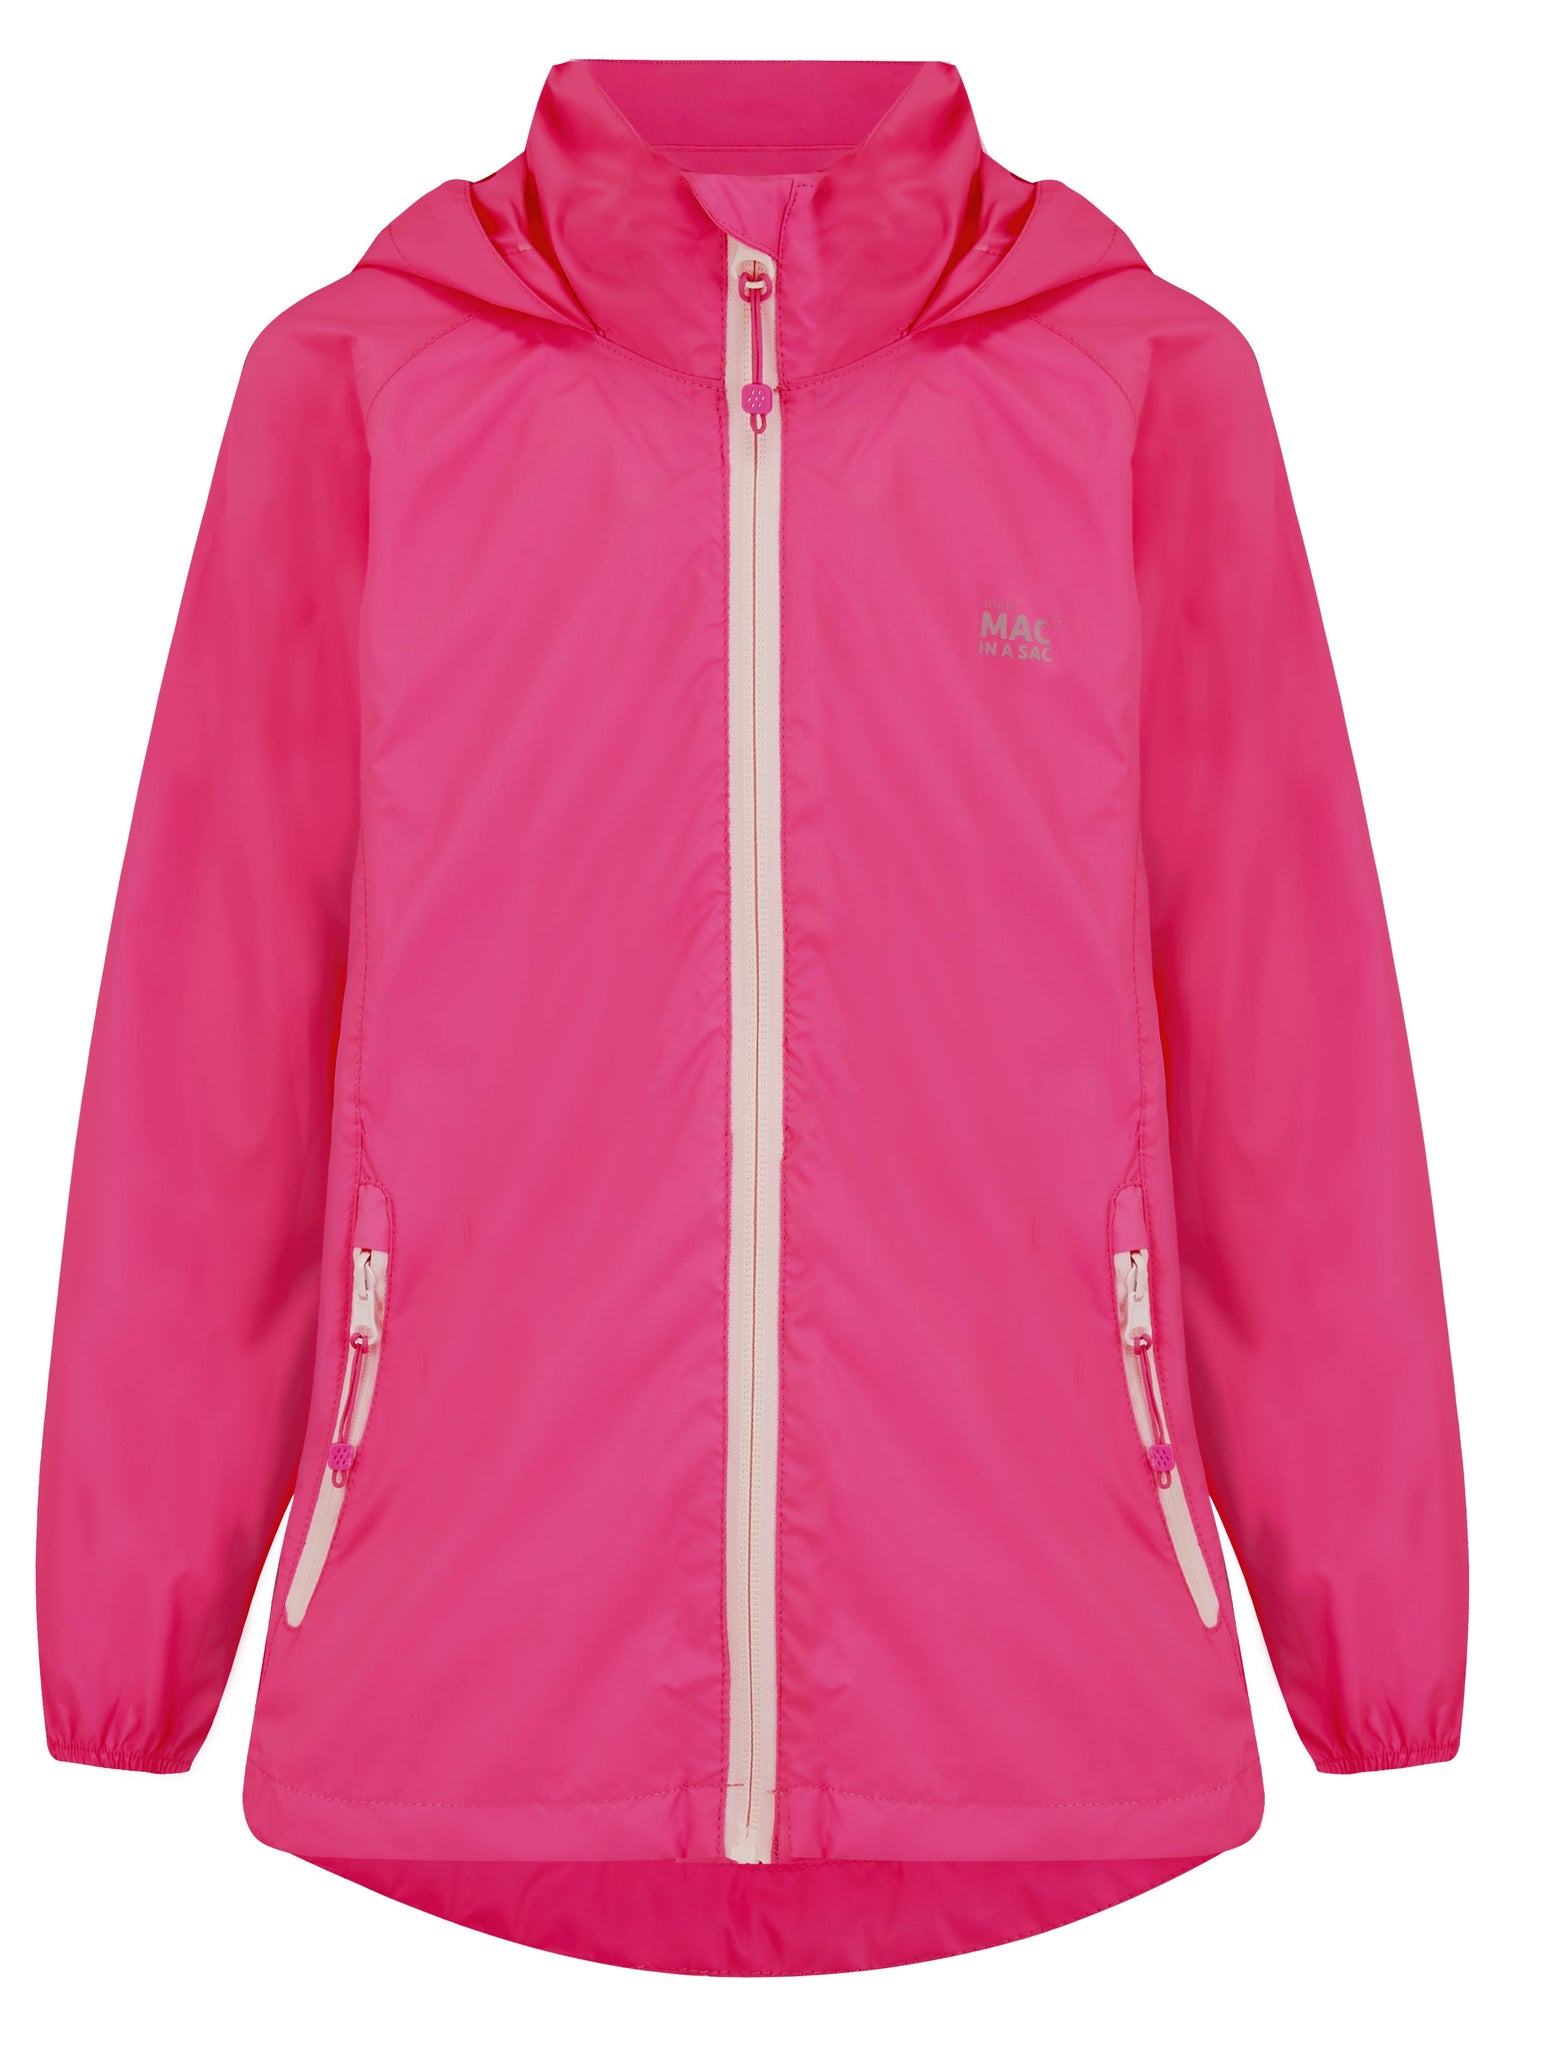 Origin Mini Packable Waterproof Kids Jacket -  New Pink